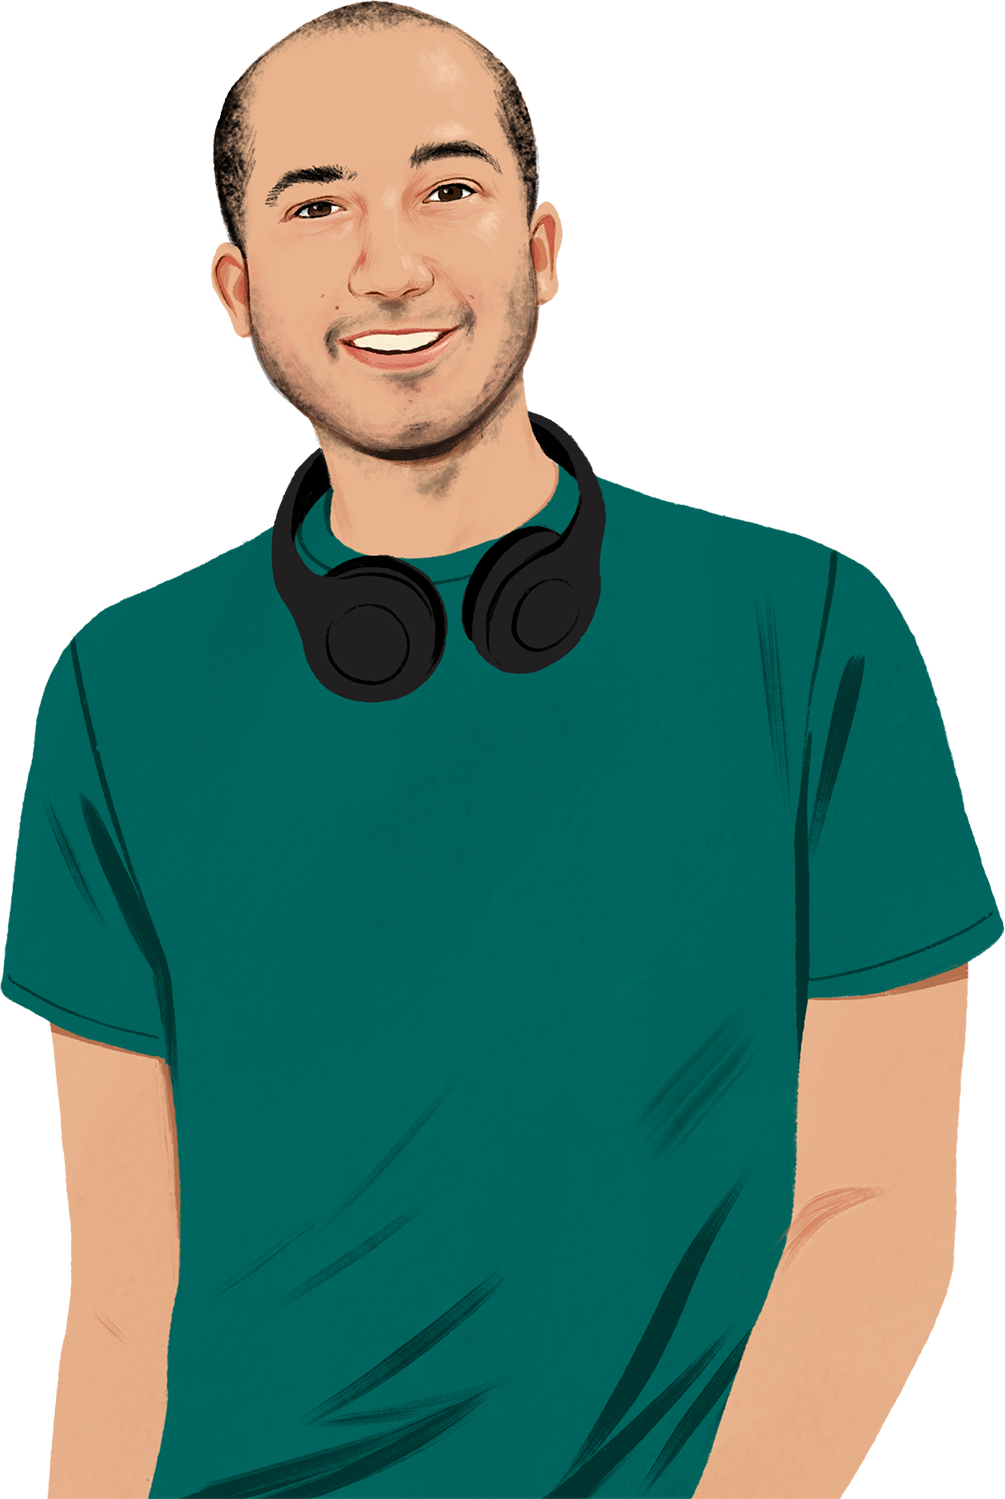 Portrait illustré de Chris qui sourit et nous regarde avec son casque d’écoute autour du cou; l’illustration d’un iPhone émettant des ondes sonores apparaît.